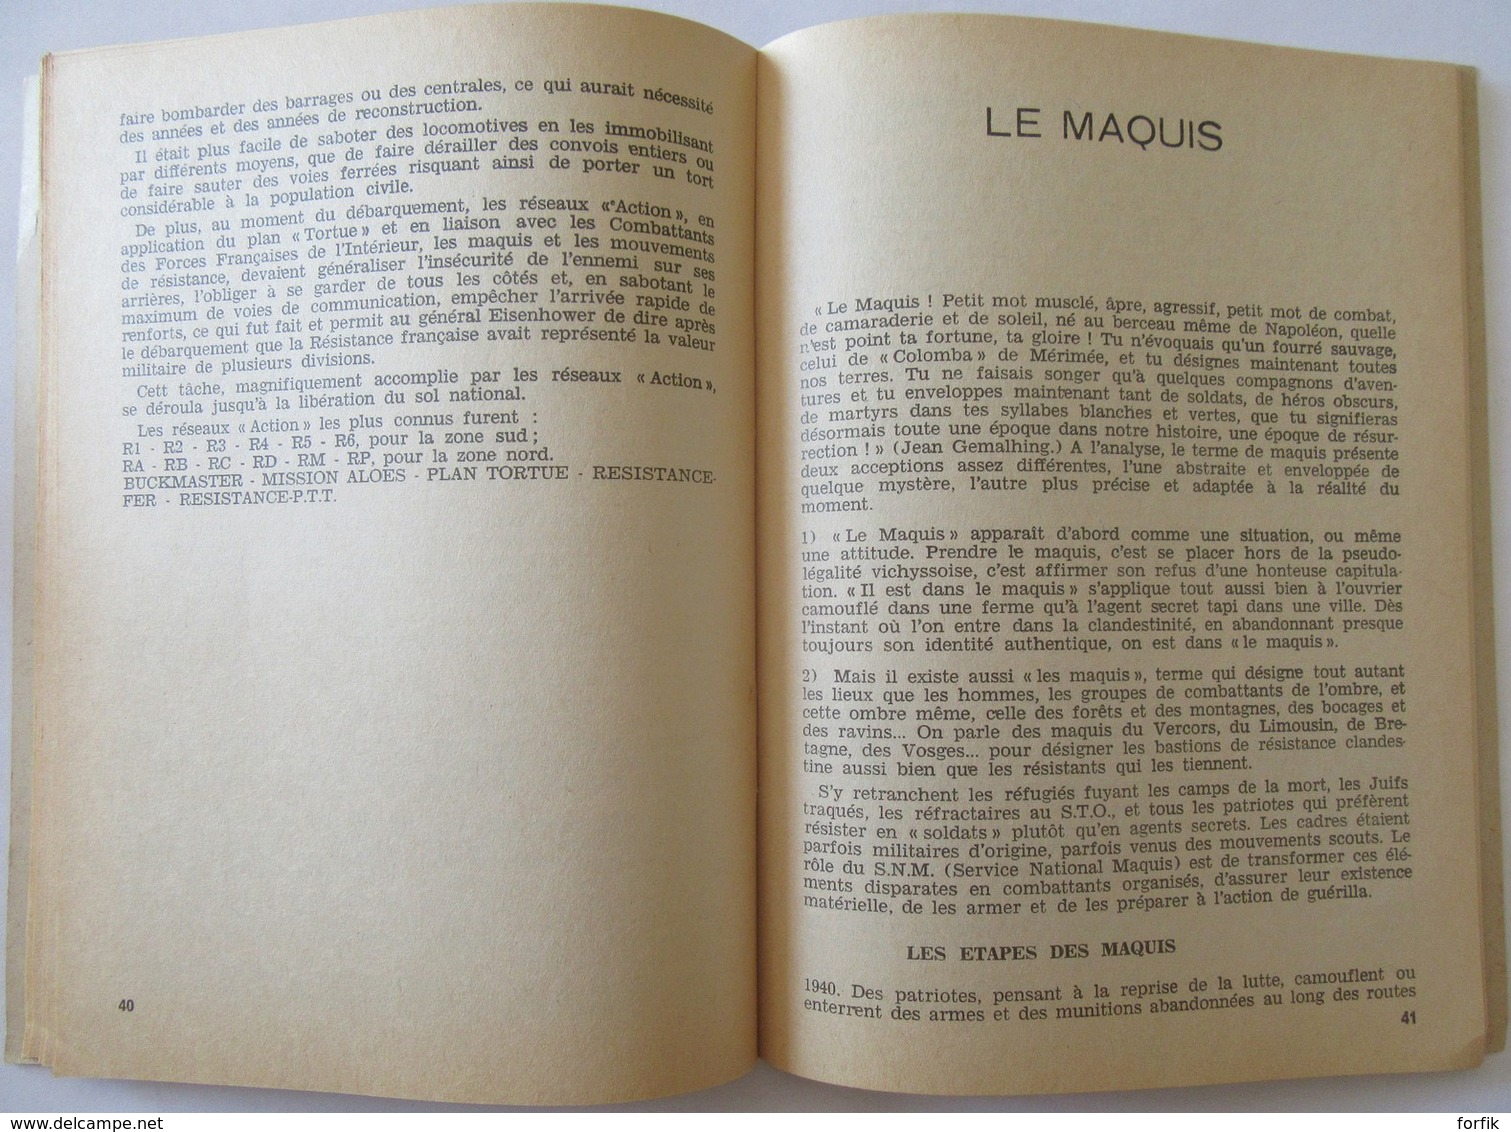 France - Livre La Resistance 1940 - 1945 - Edition de la Résistance n°100, 1964